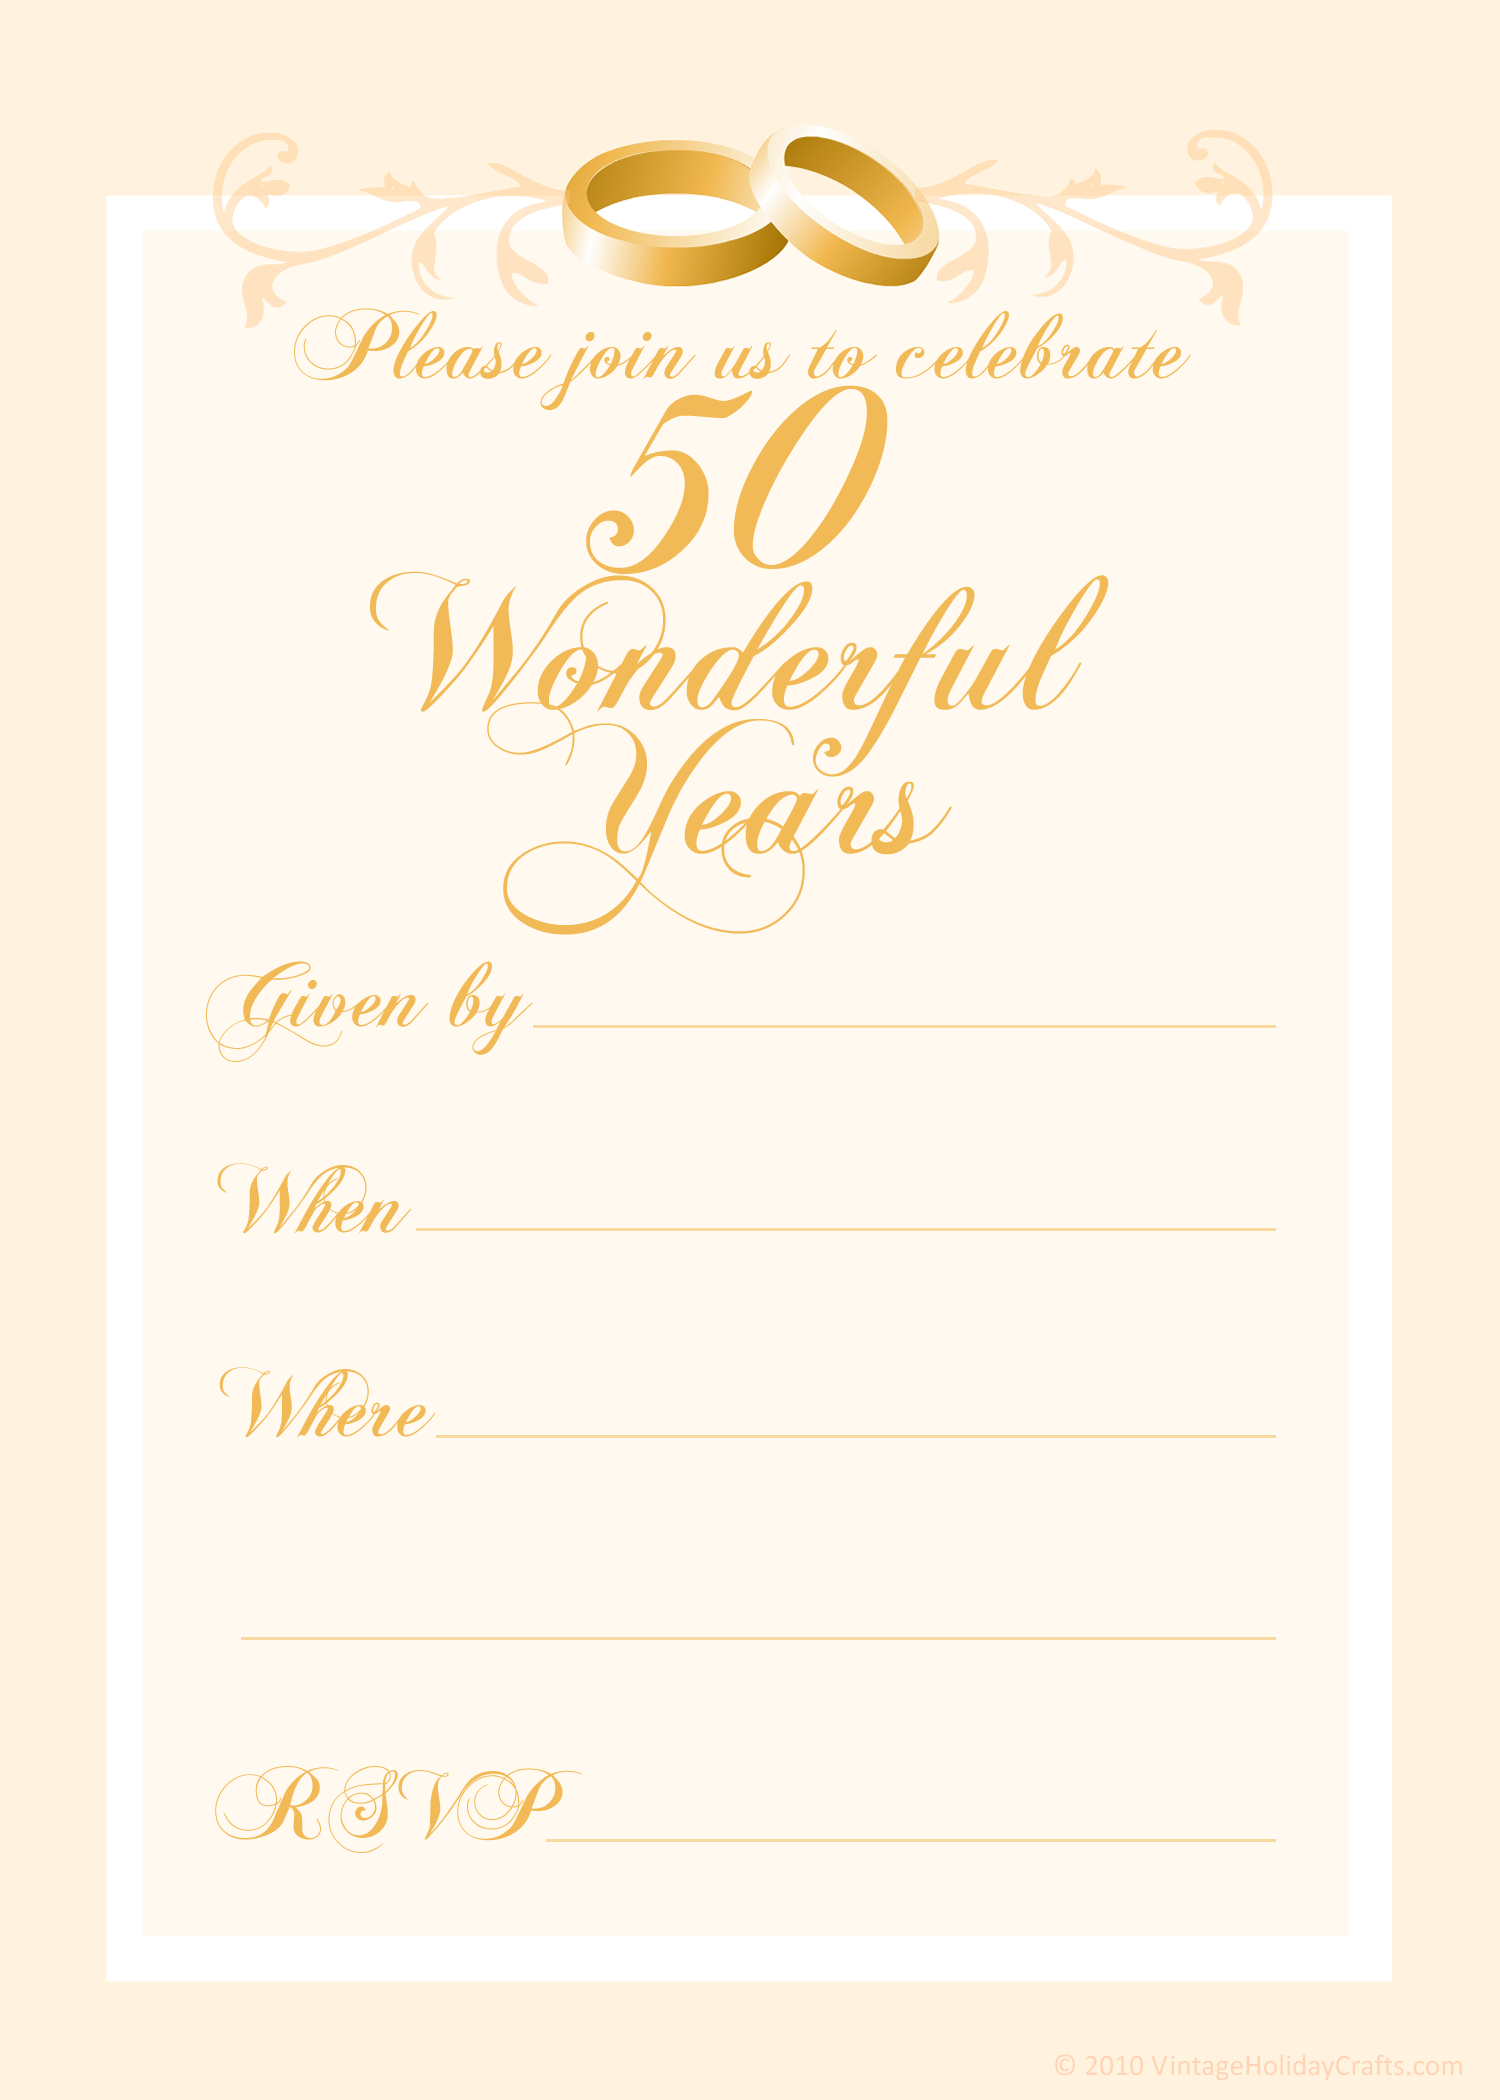 Приглашение на золотую свадьбу 50